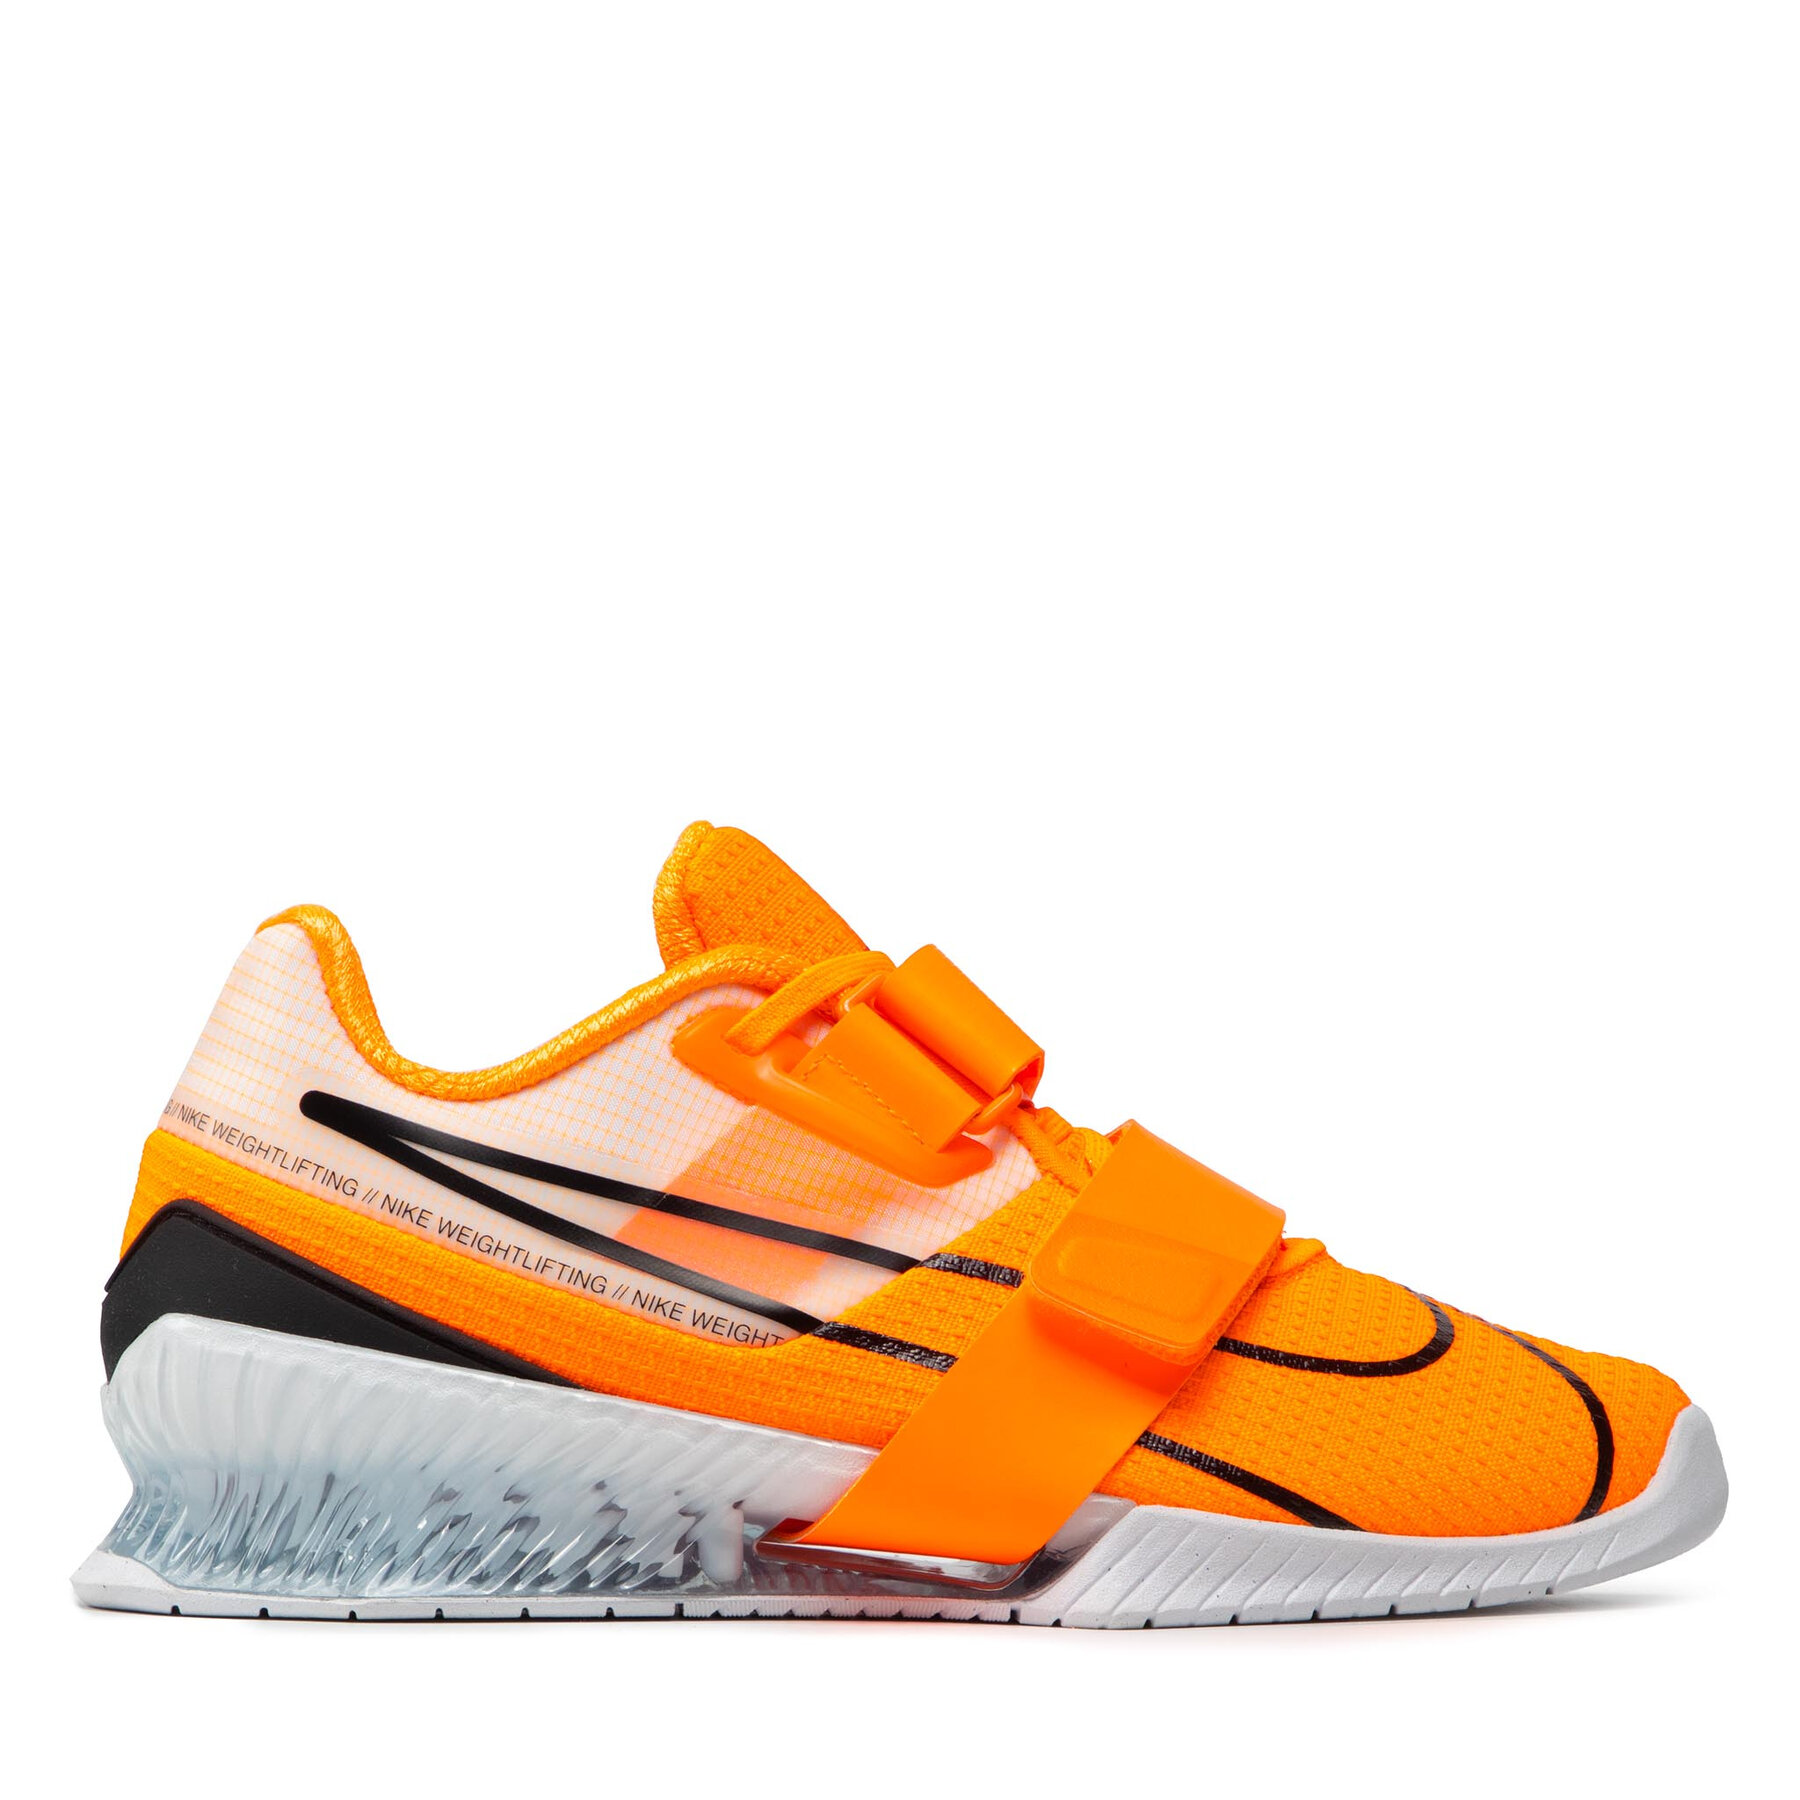 Chaussures pour la salle de sport Nike Romaleos 4 CD3463 801 Orange